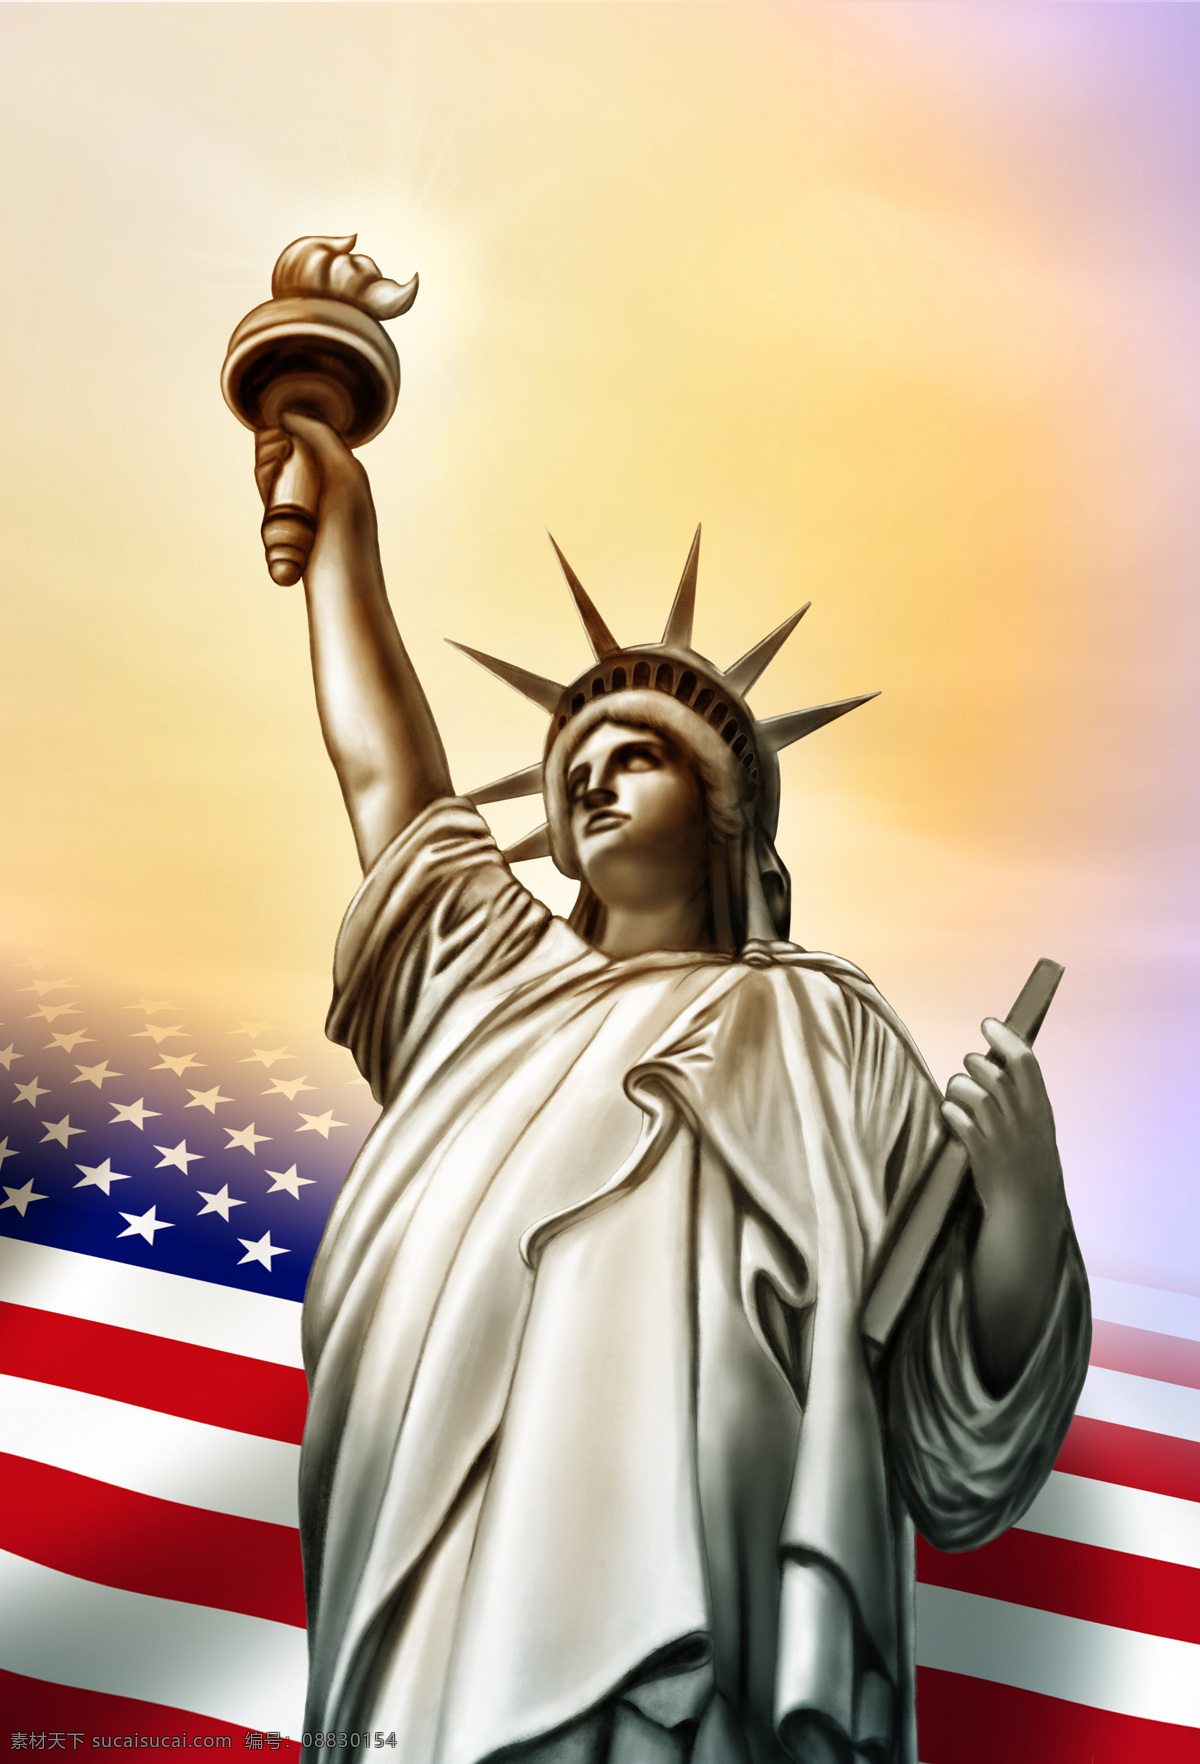 自由女神 美国国旗 星条旗 美国文化 美国精神 美国象征 美国国庆 节日庆祝 文化艺术